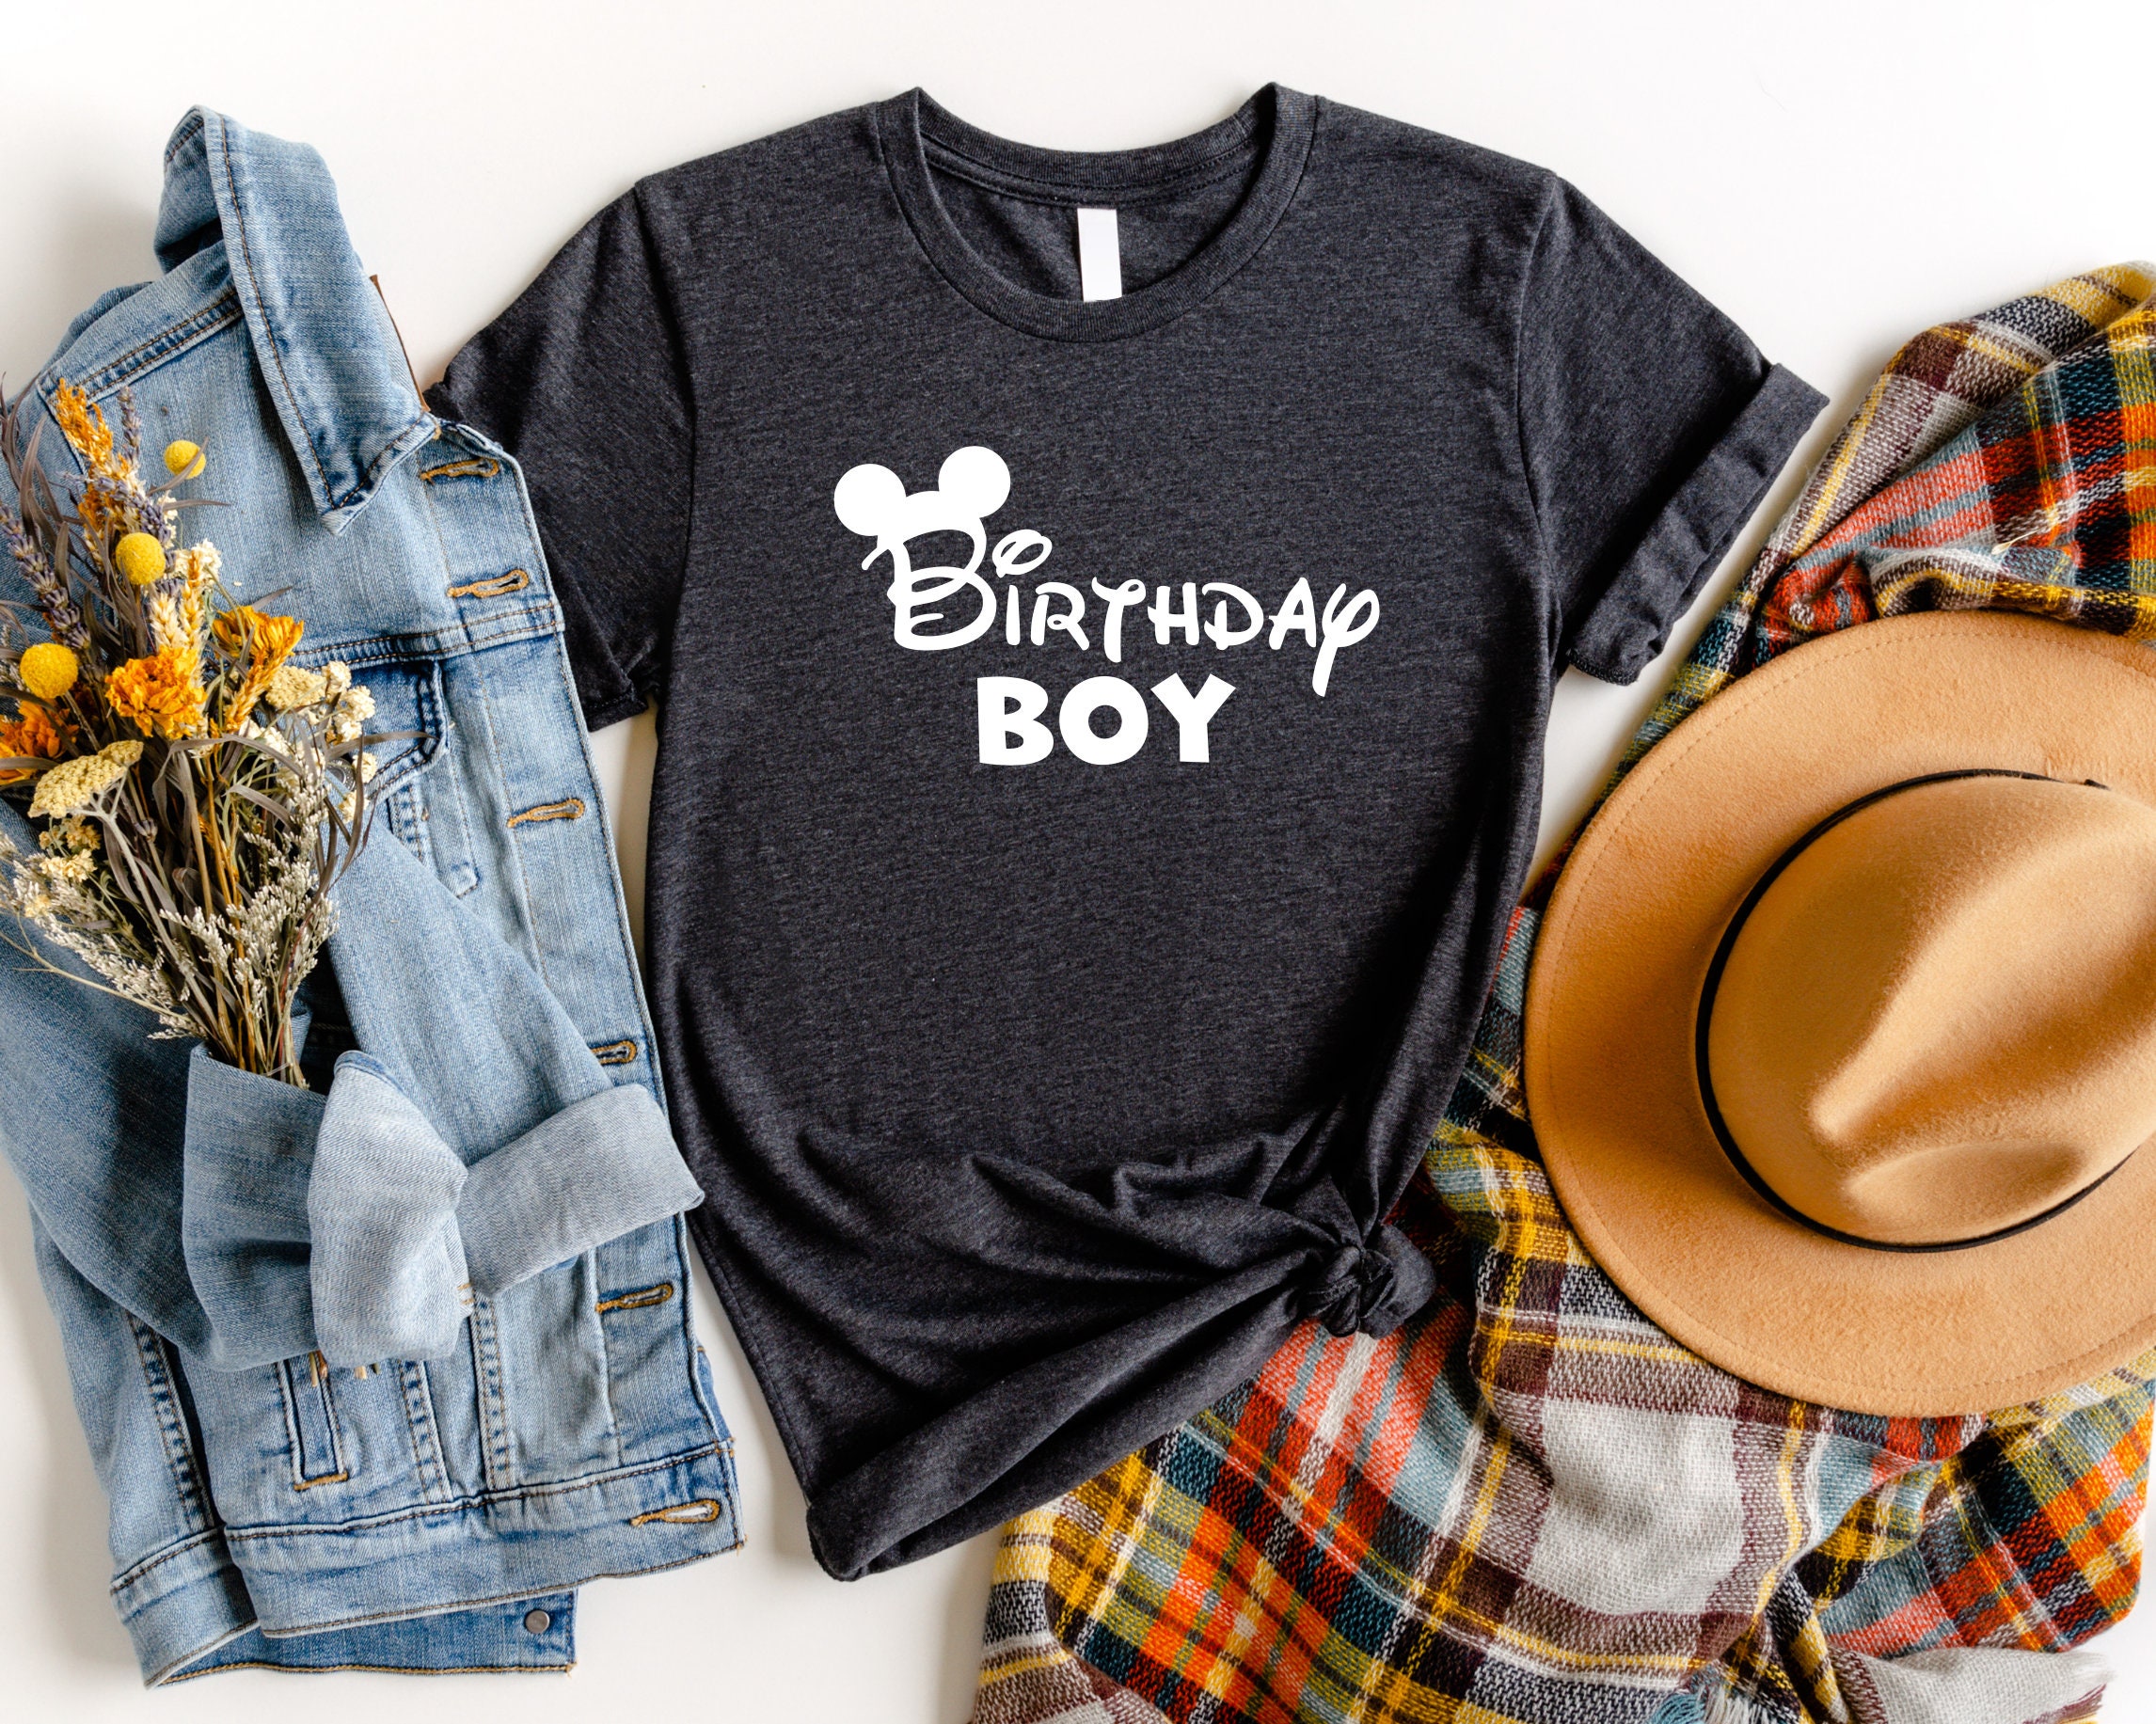 Disney Birthday Girl Shirt, Disney Birthday Party, Best Birthday Ever